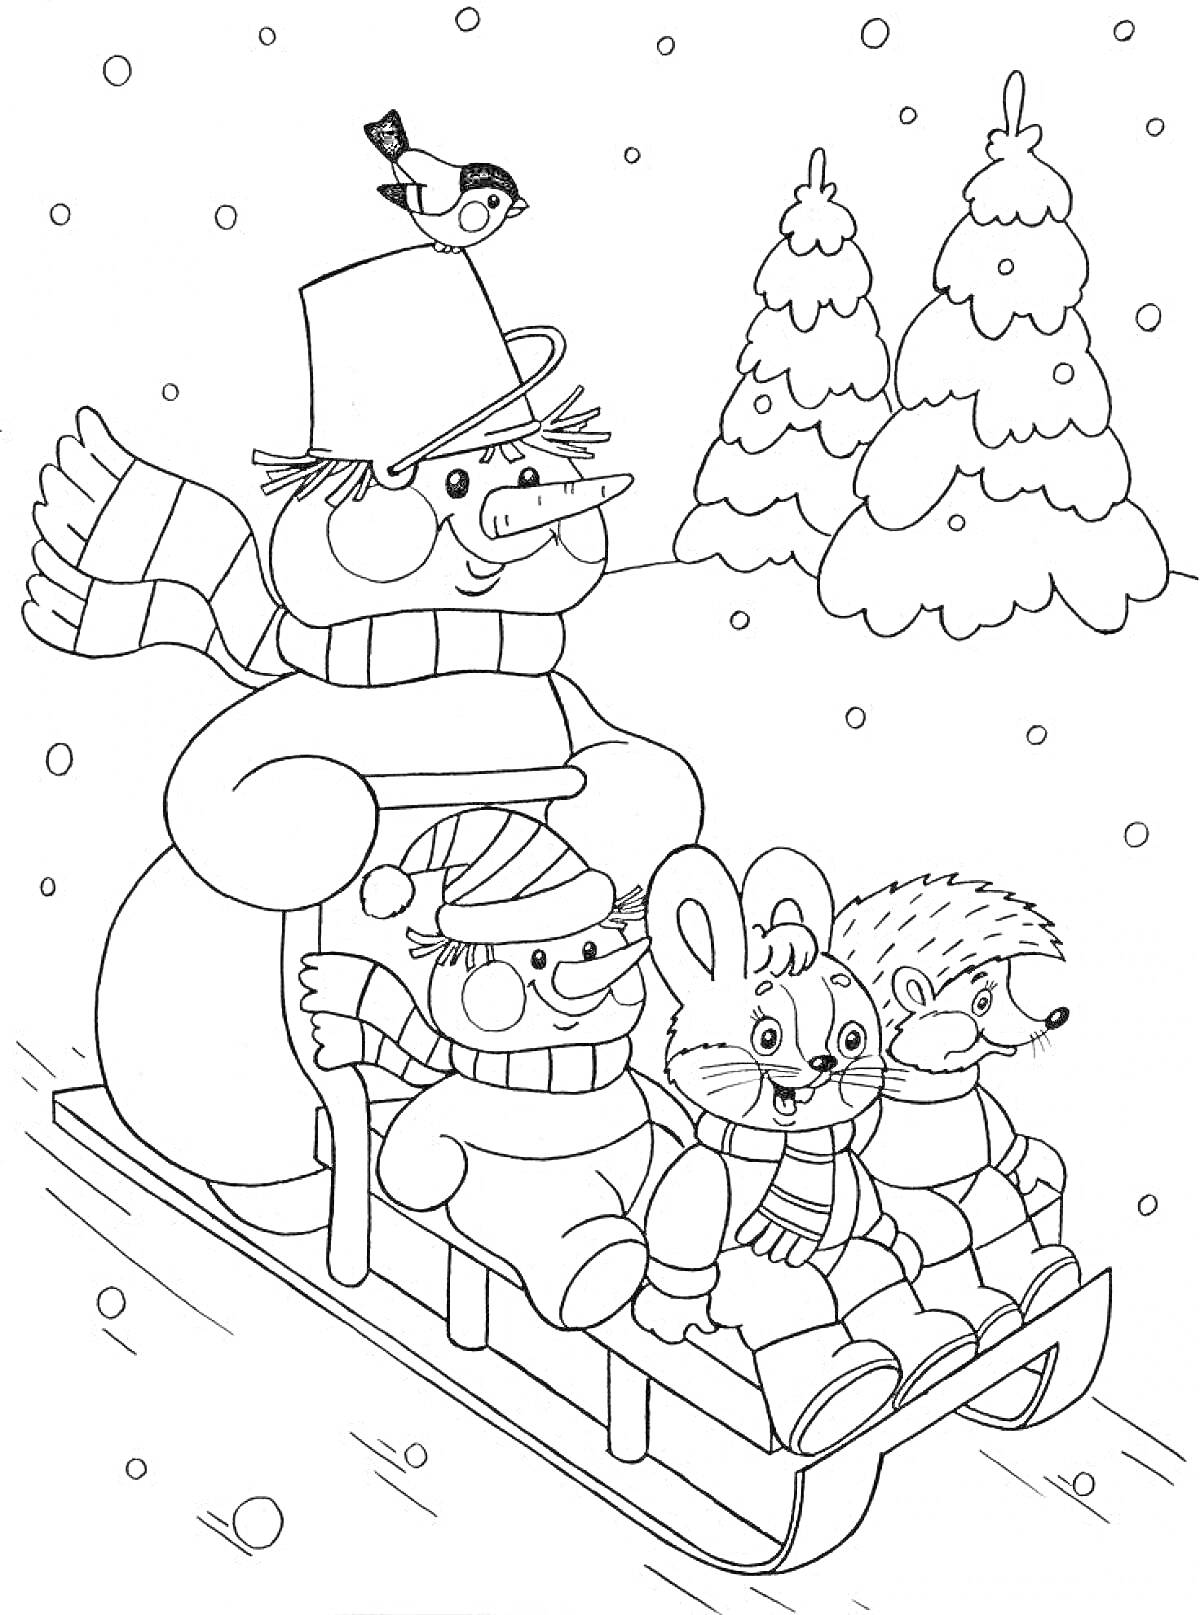 Раскраска Снеговик с птичкой катает зайца, ежика и медвежонка на санках по снегу